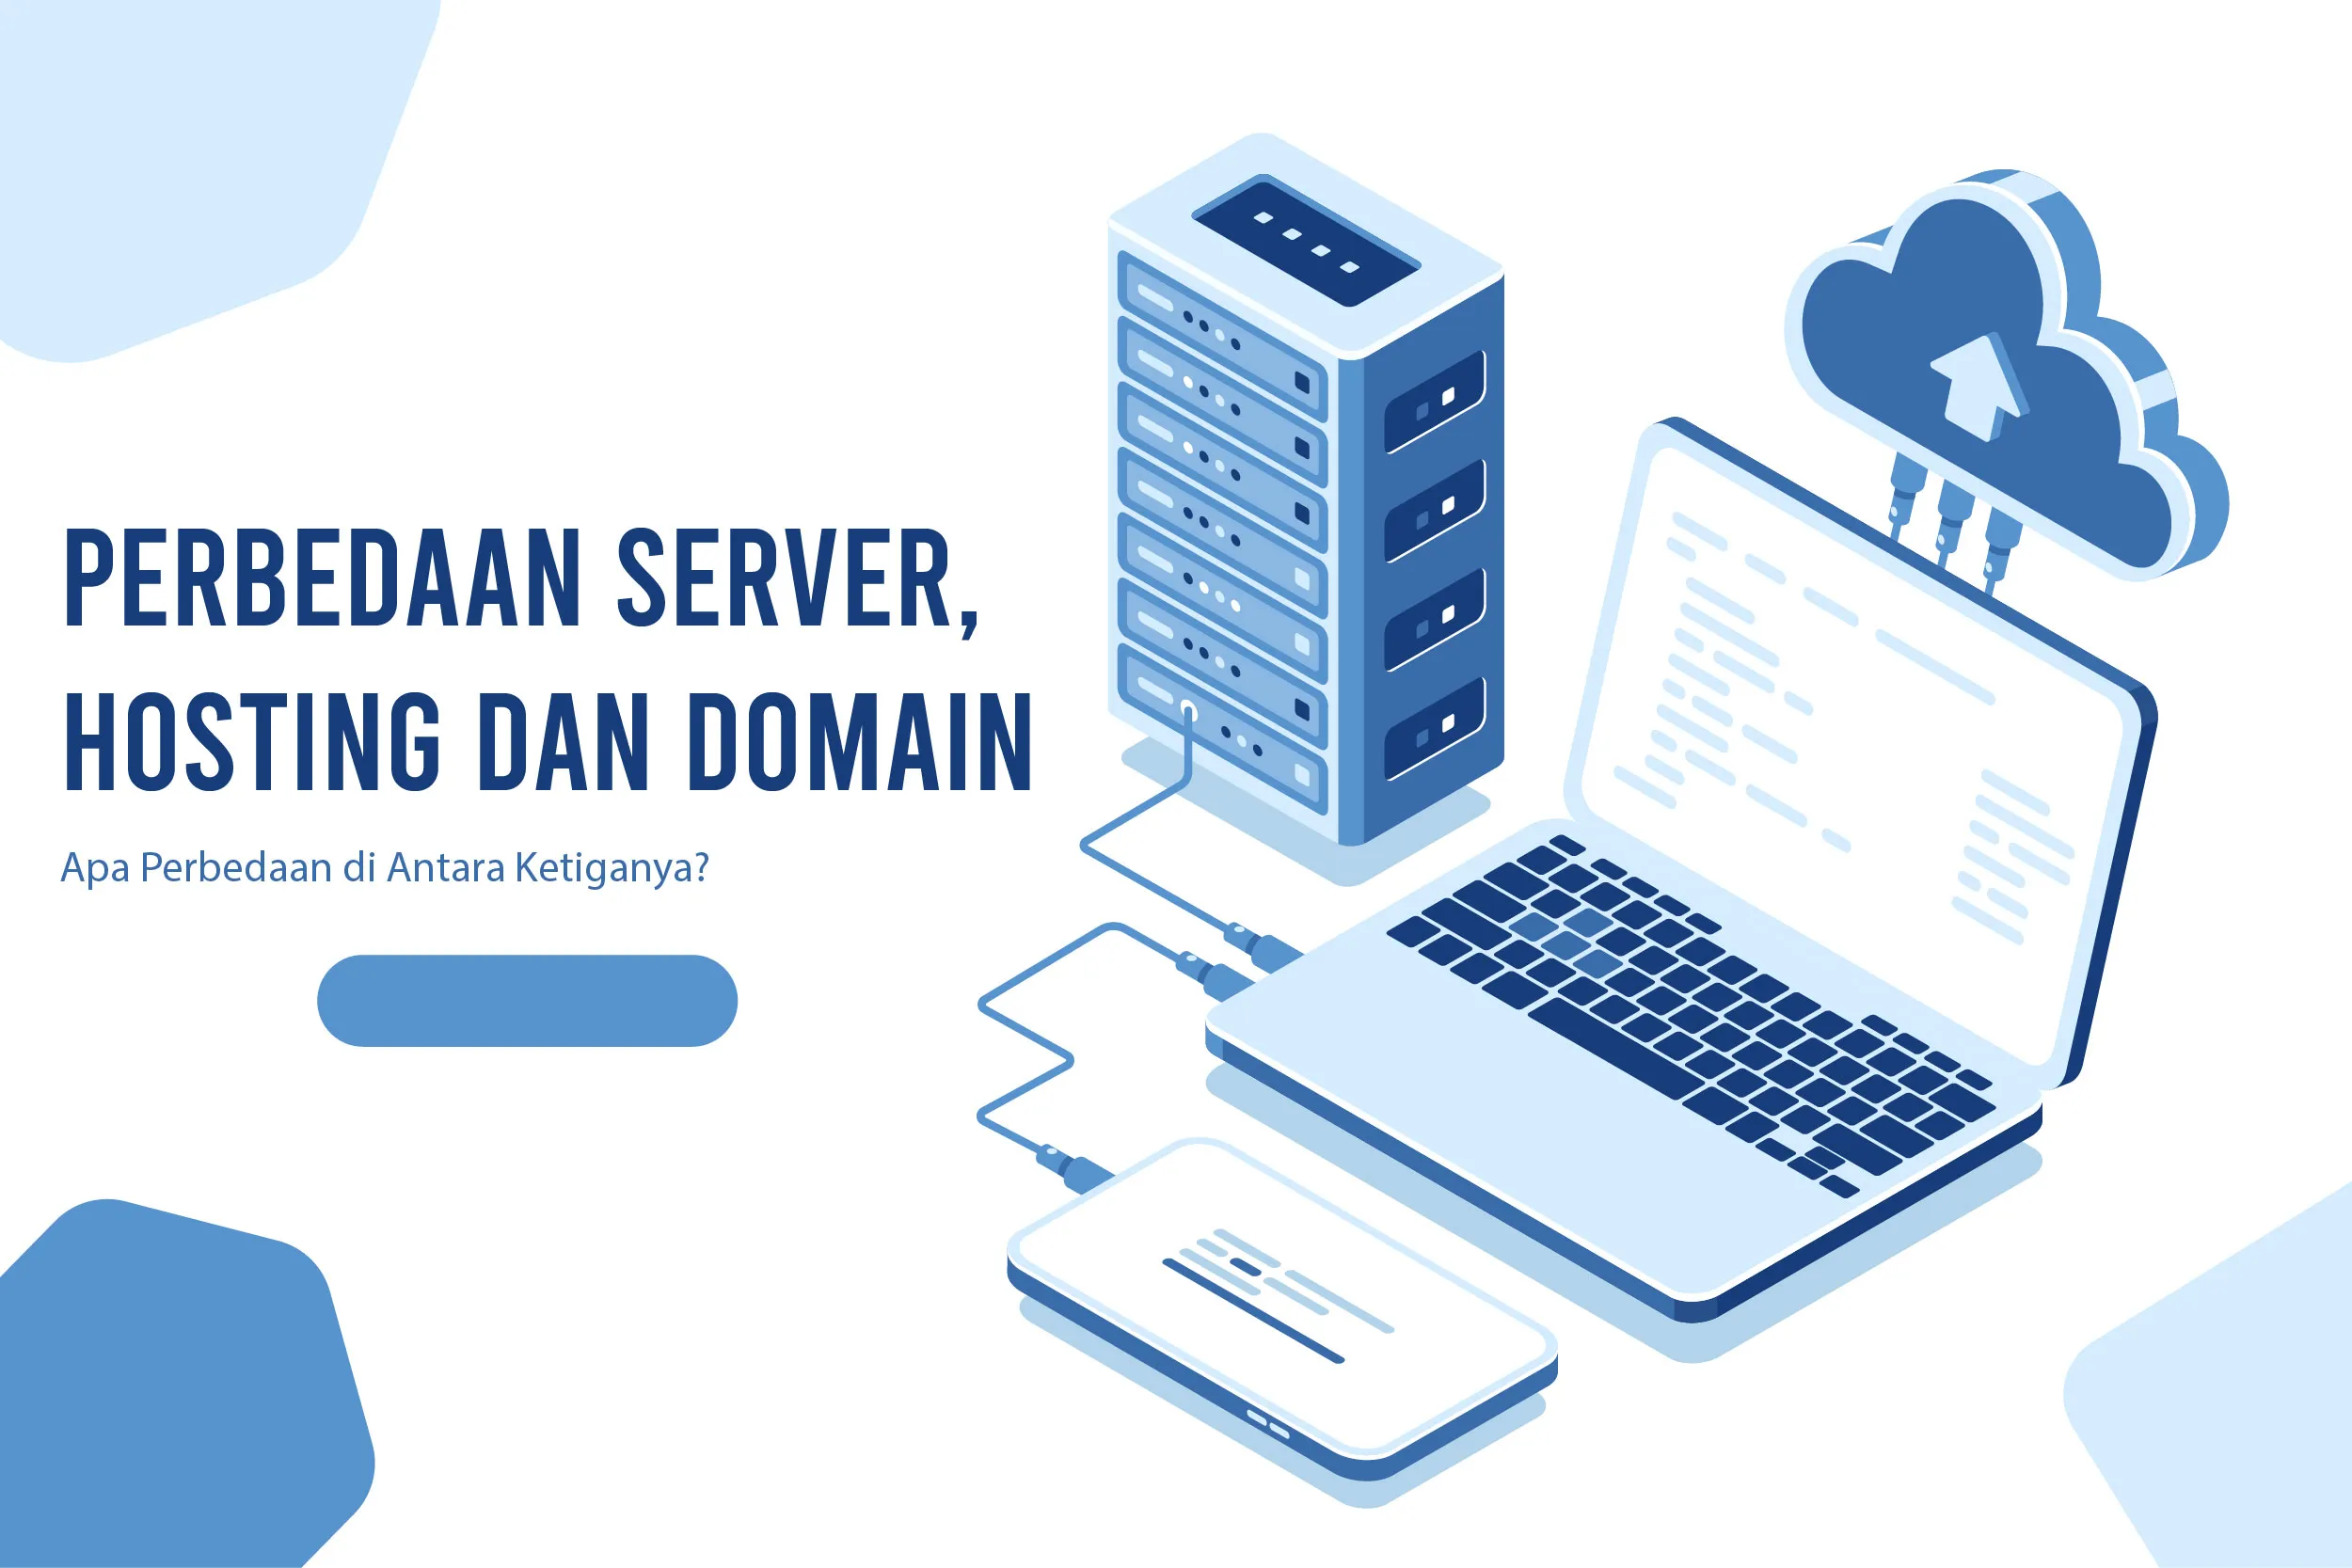 Perbedaan Server, Hosting dan Domain